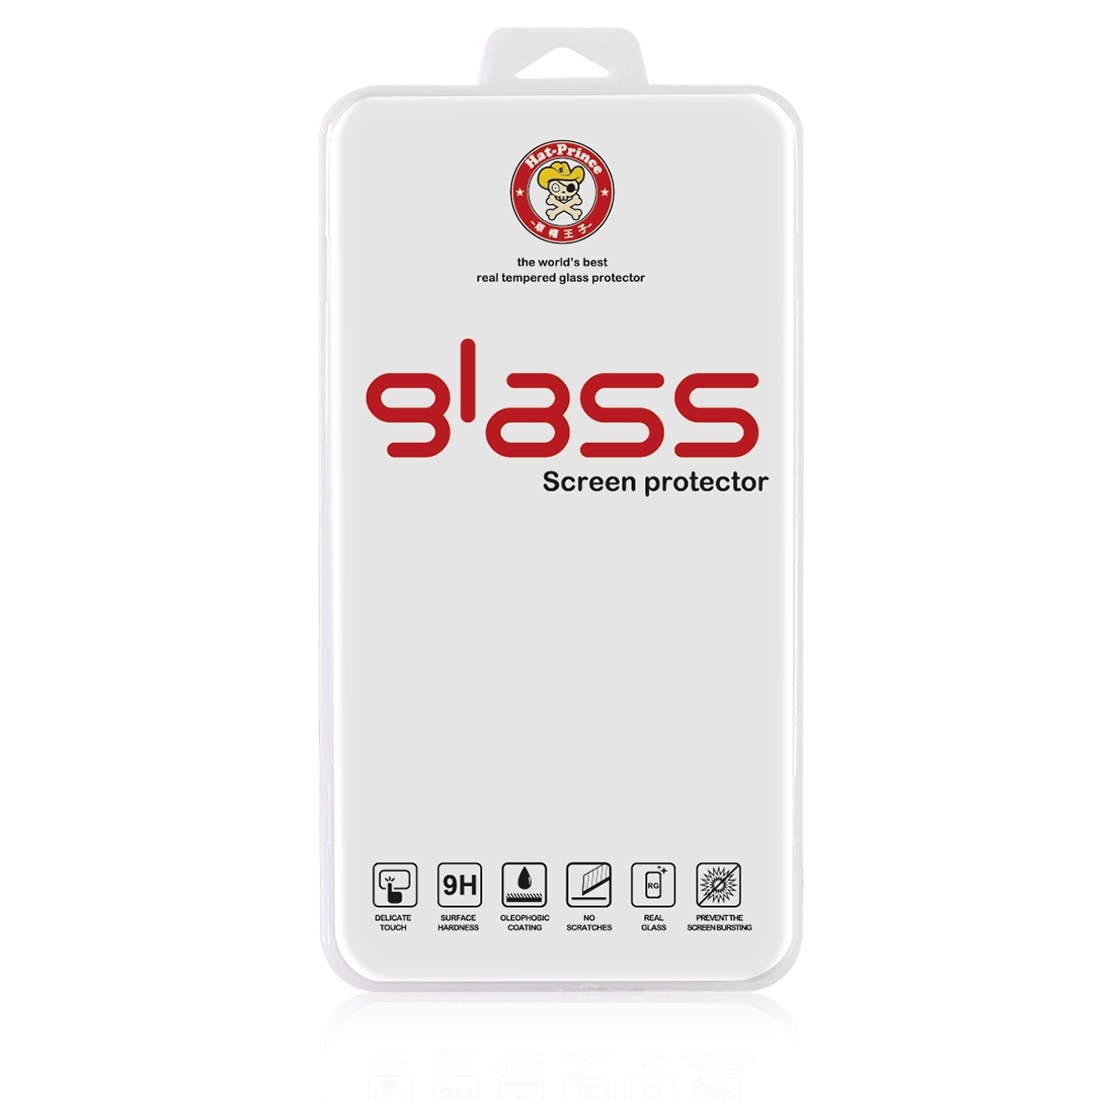 Böjt härdat fullskärmsskydd i glas till iPhone 8 / 7 - Silver